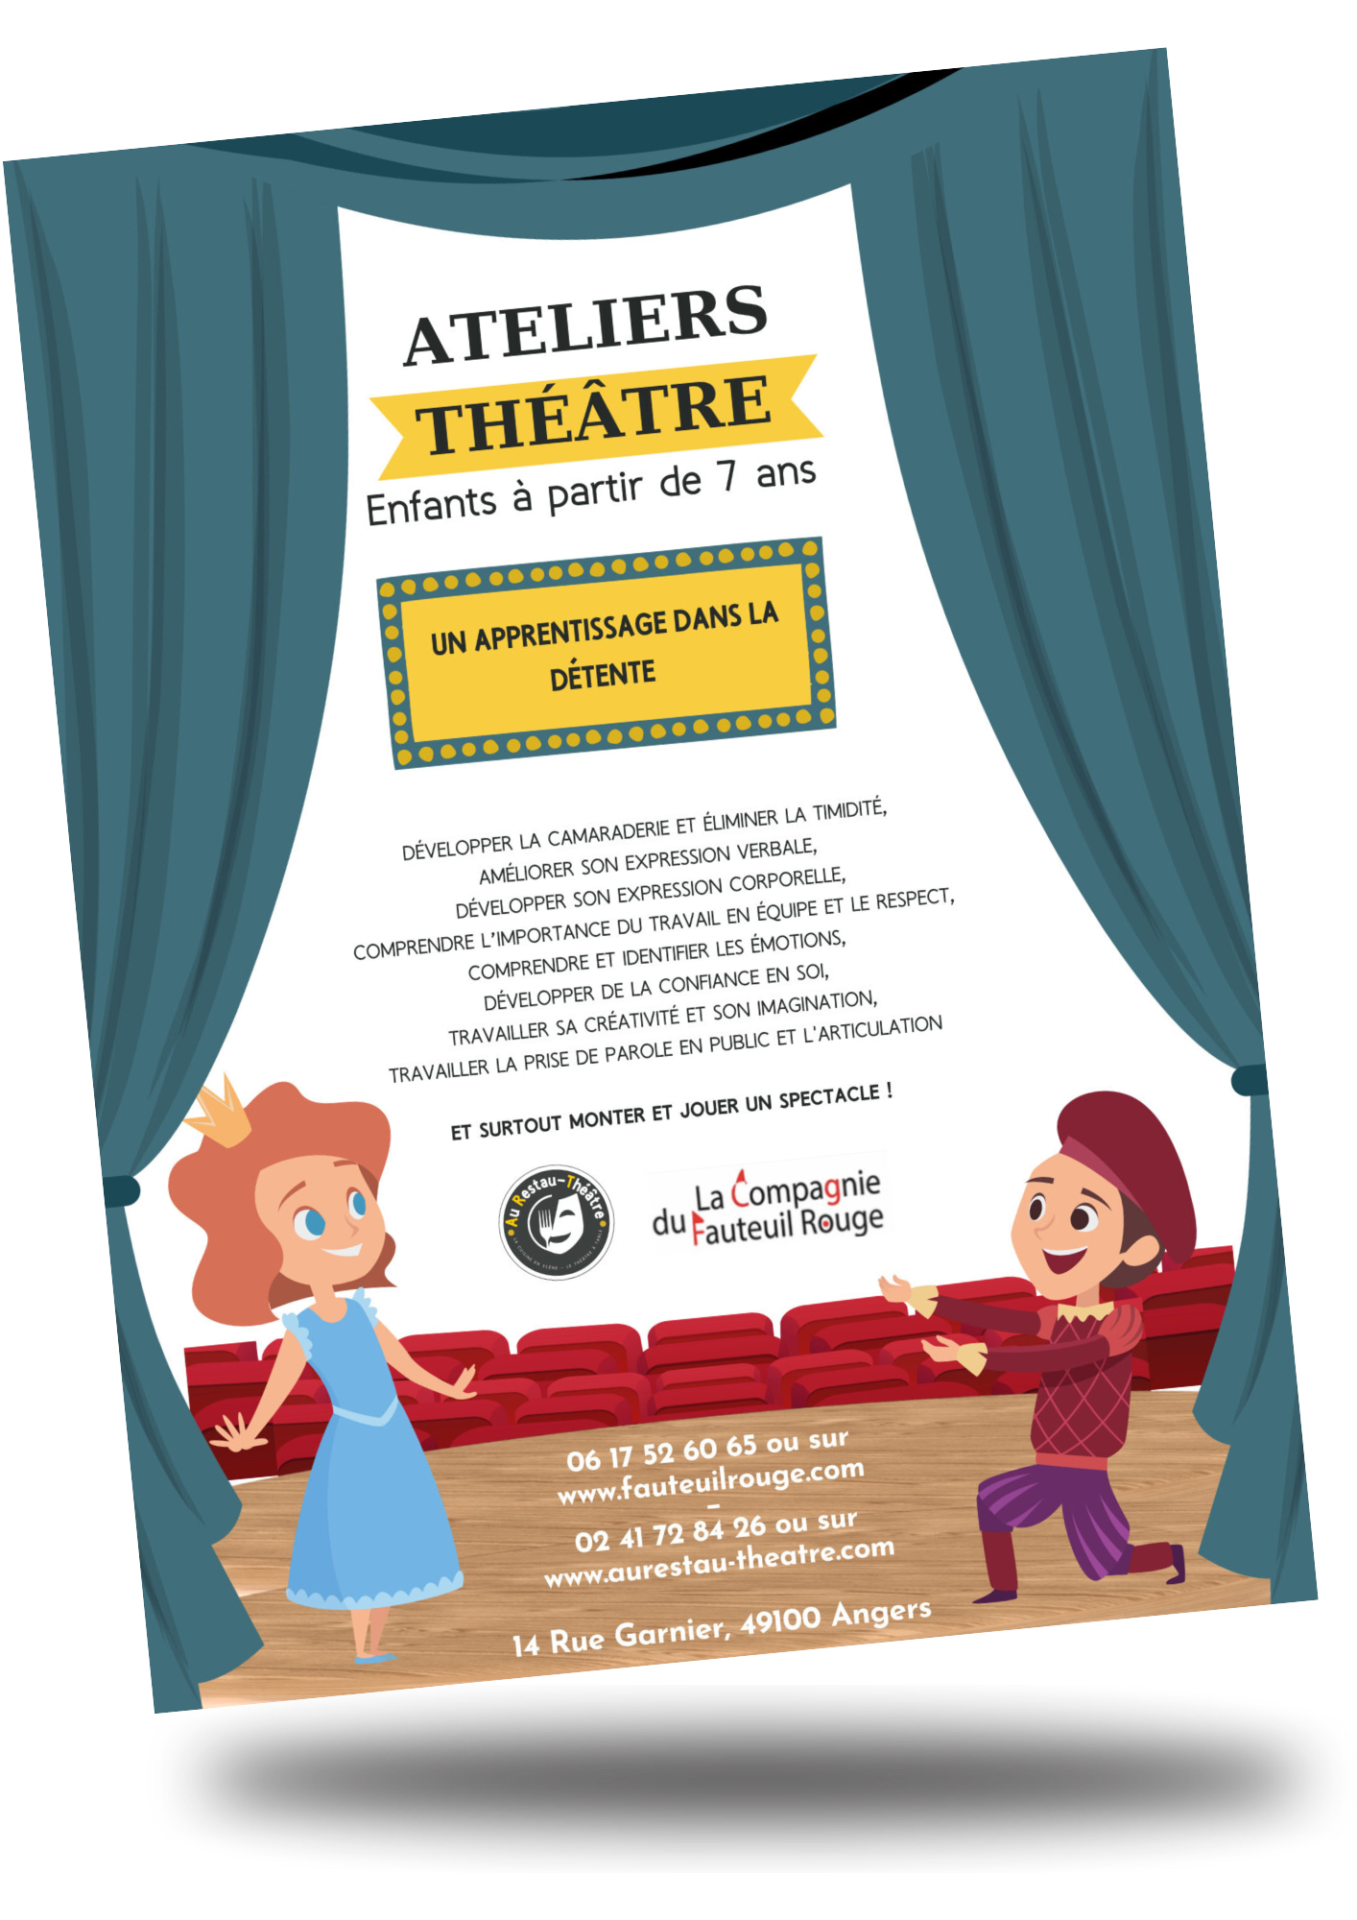 Affiche pour les Ateliers théâtre Enfants Au Restau-Théâtre à Angers avec la compagnie du fauteuil rouge.